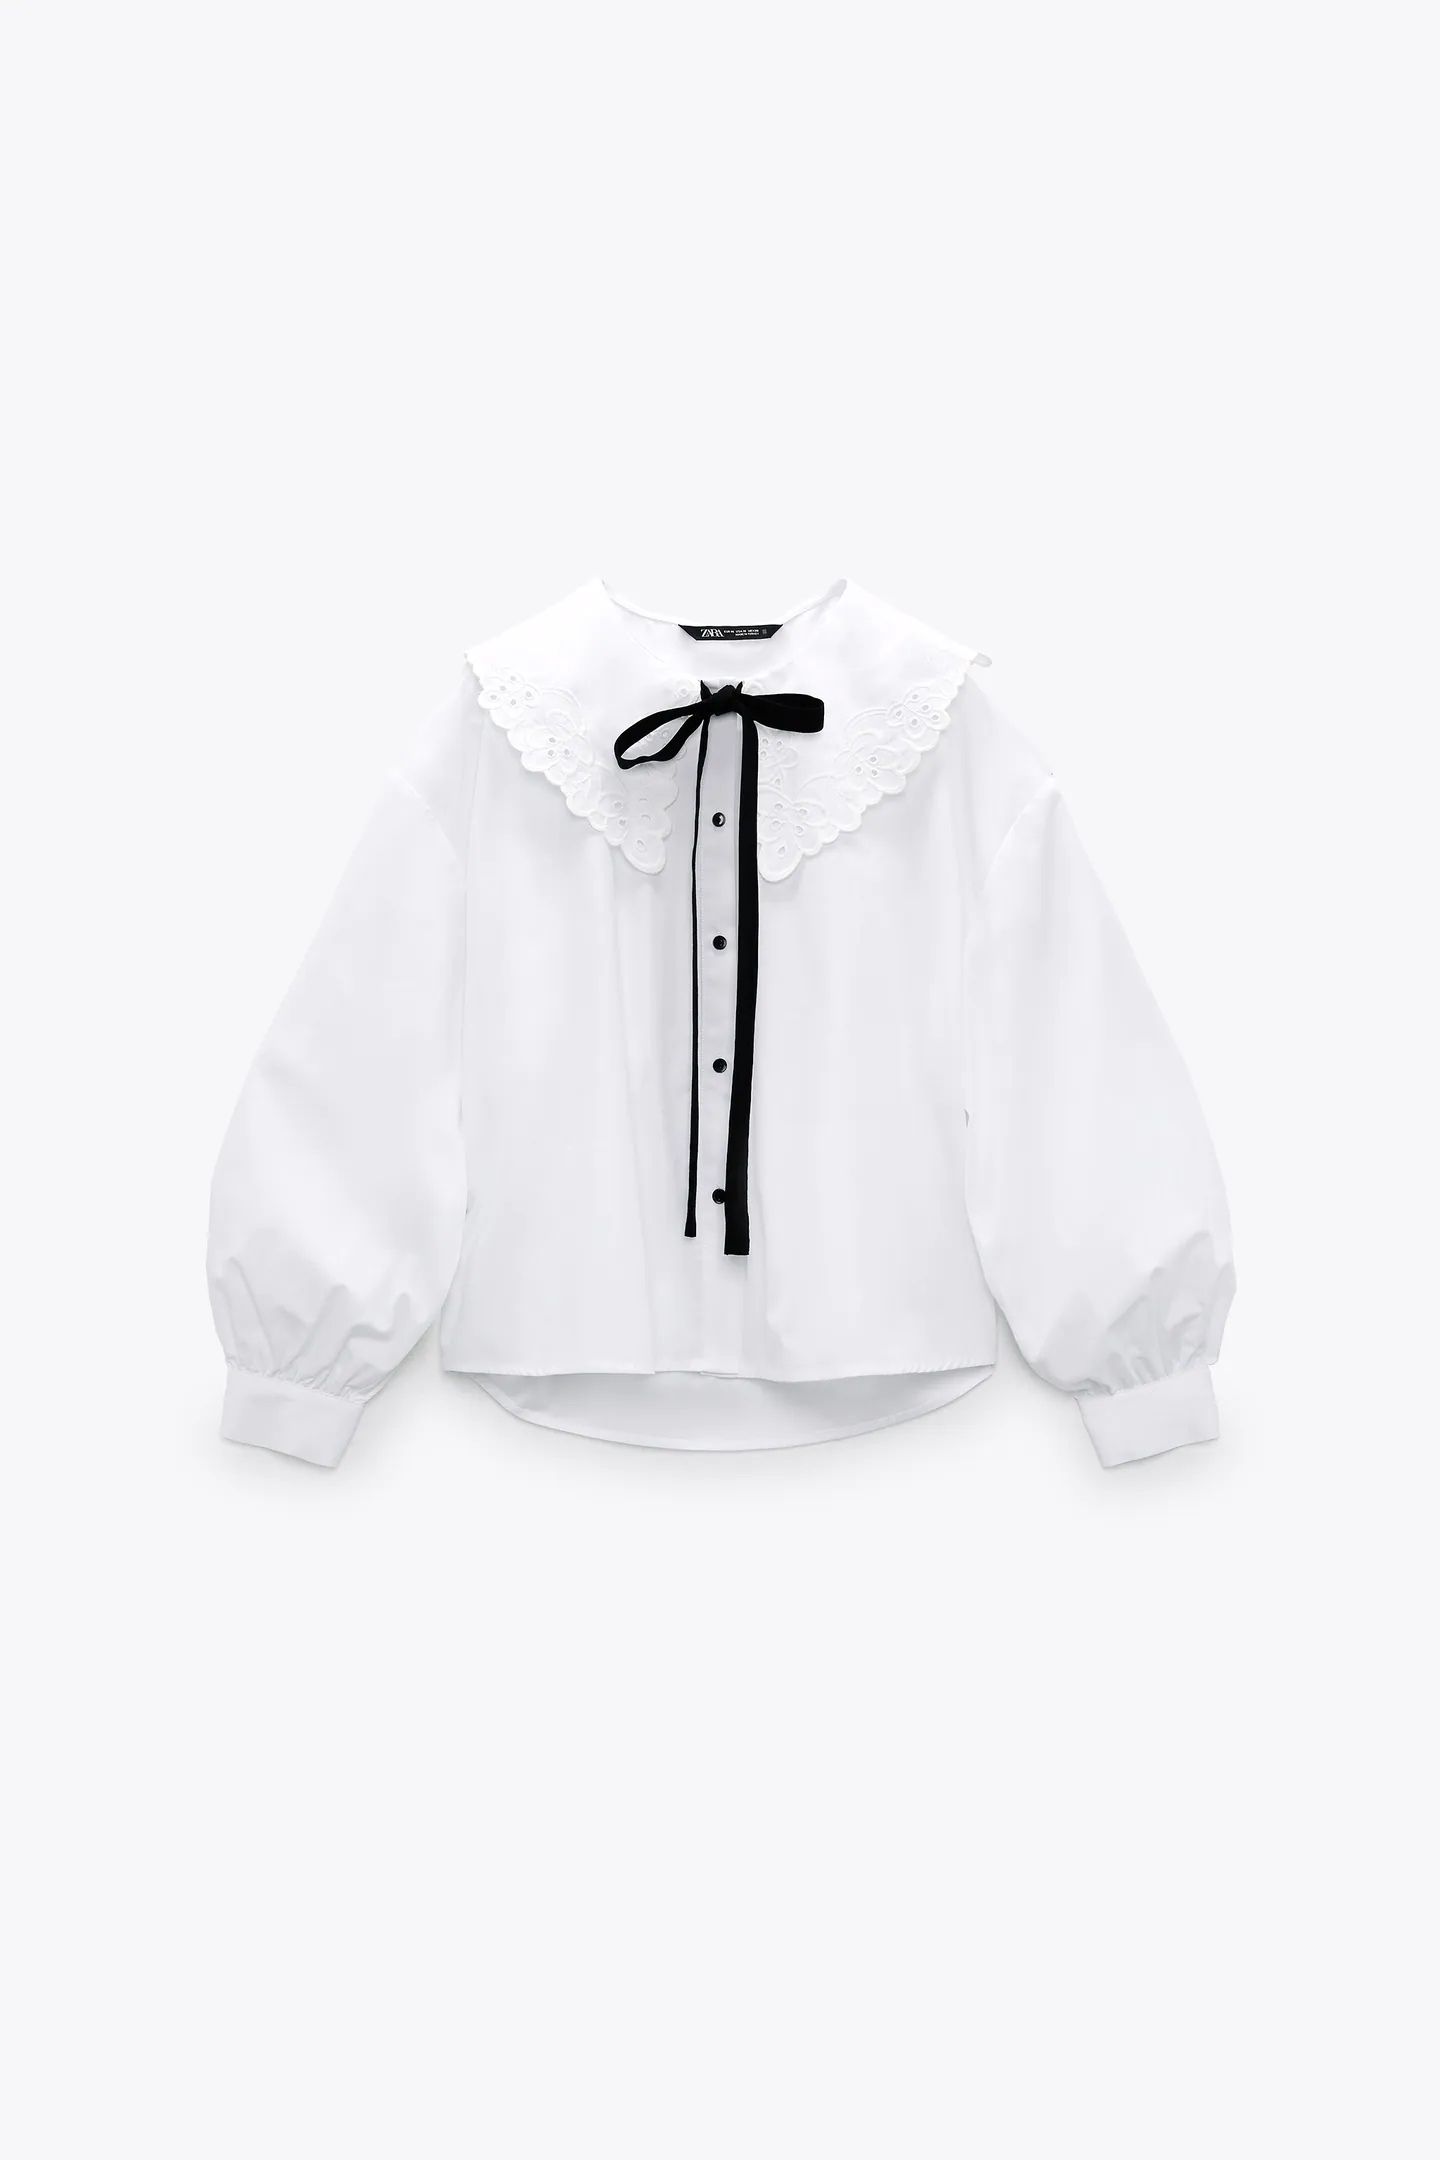 Zara camisa blanca Victoria Beckham - Zara blusa